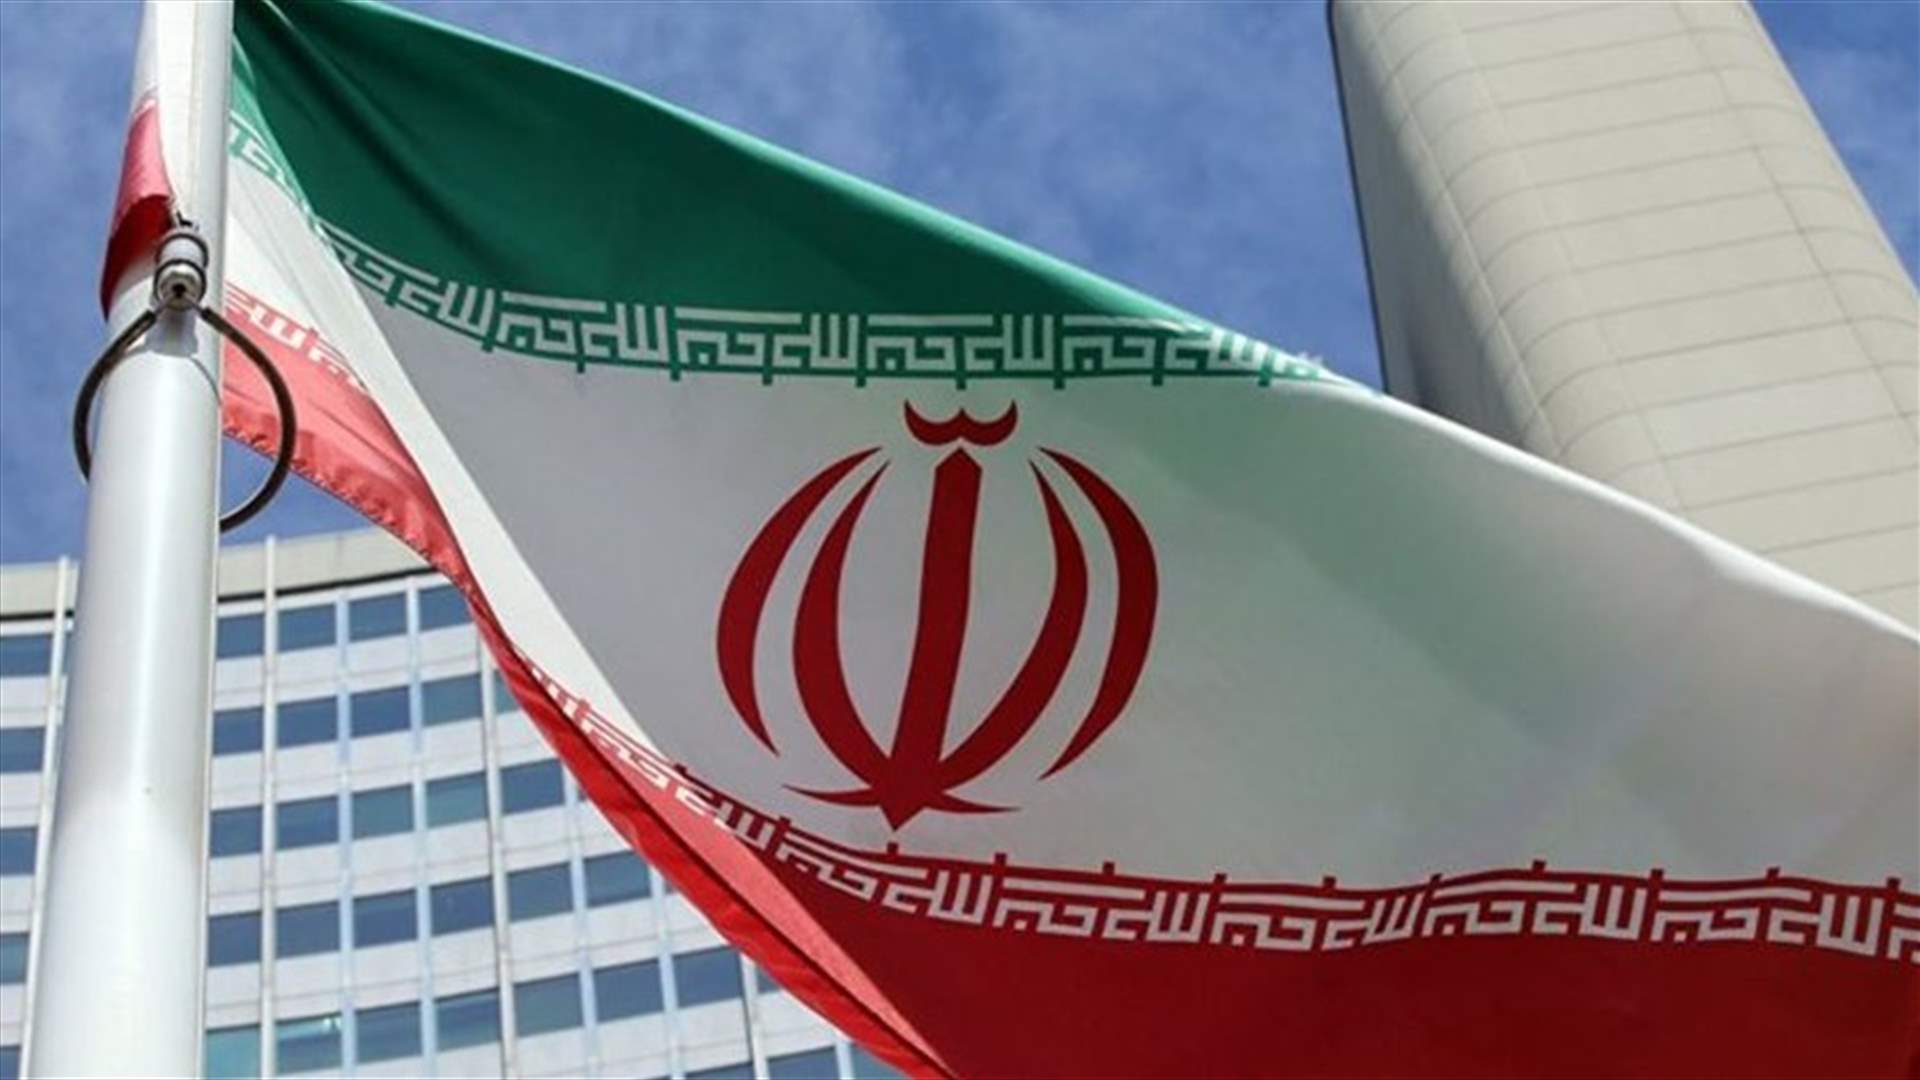 ايران تندد بالعقوبات الأميركية غير القانونية بعد إنهاء الإعفاءات لشراء نفطها